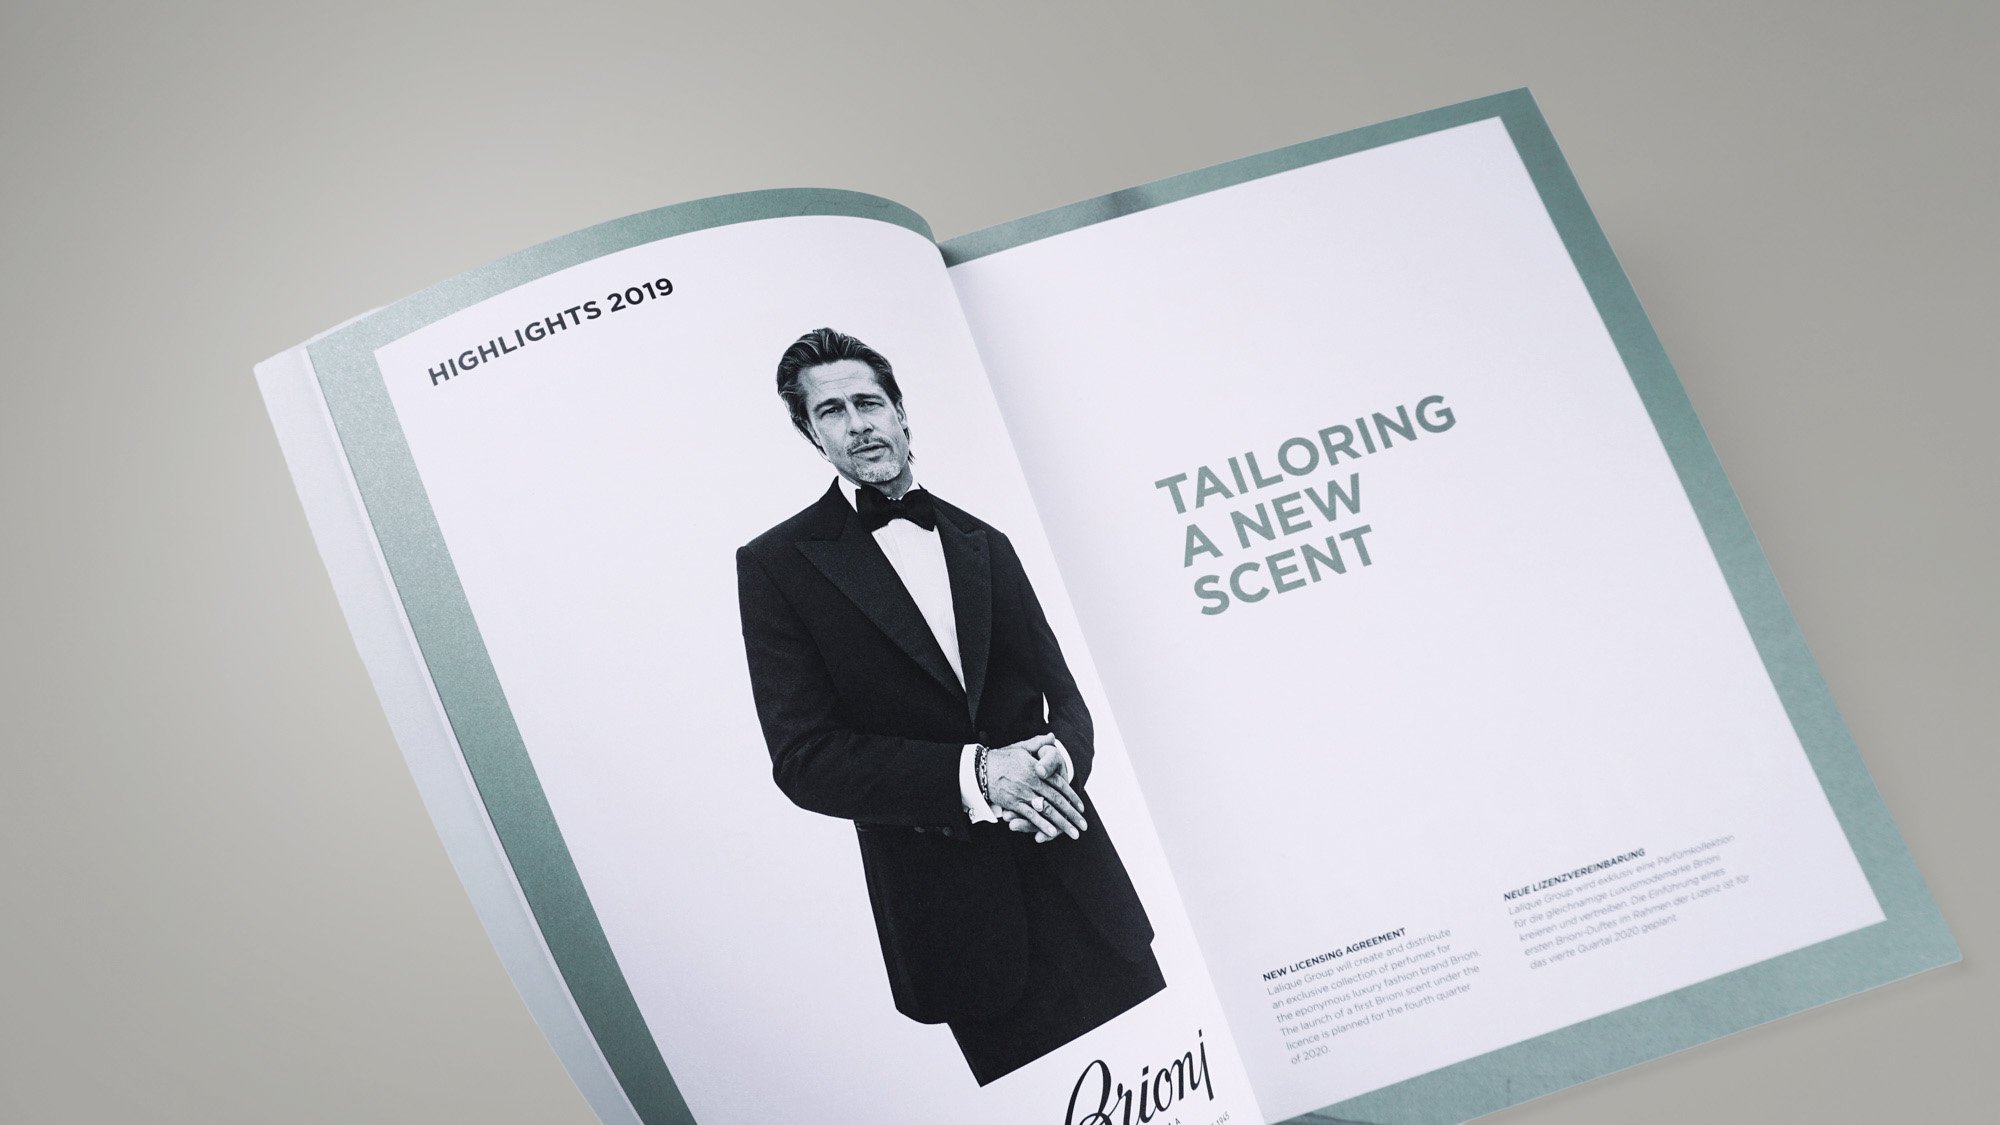 Rapporto annuale 2019 di Lalique: i punti salienti del layout